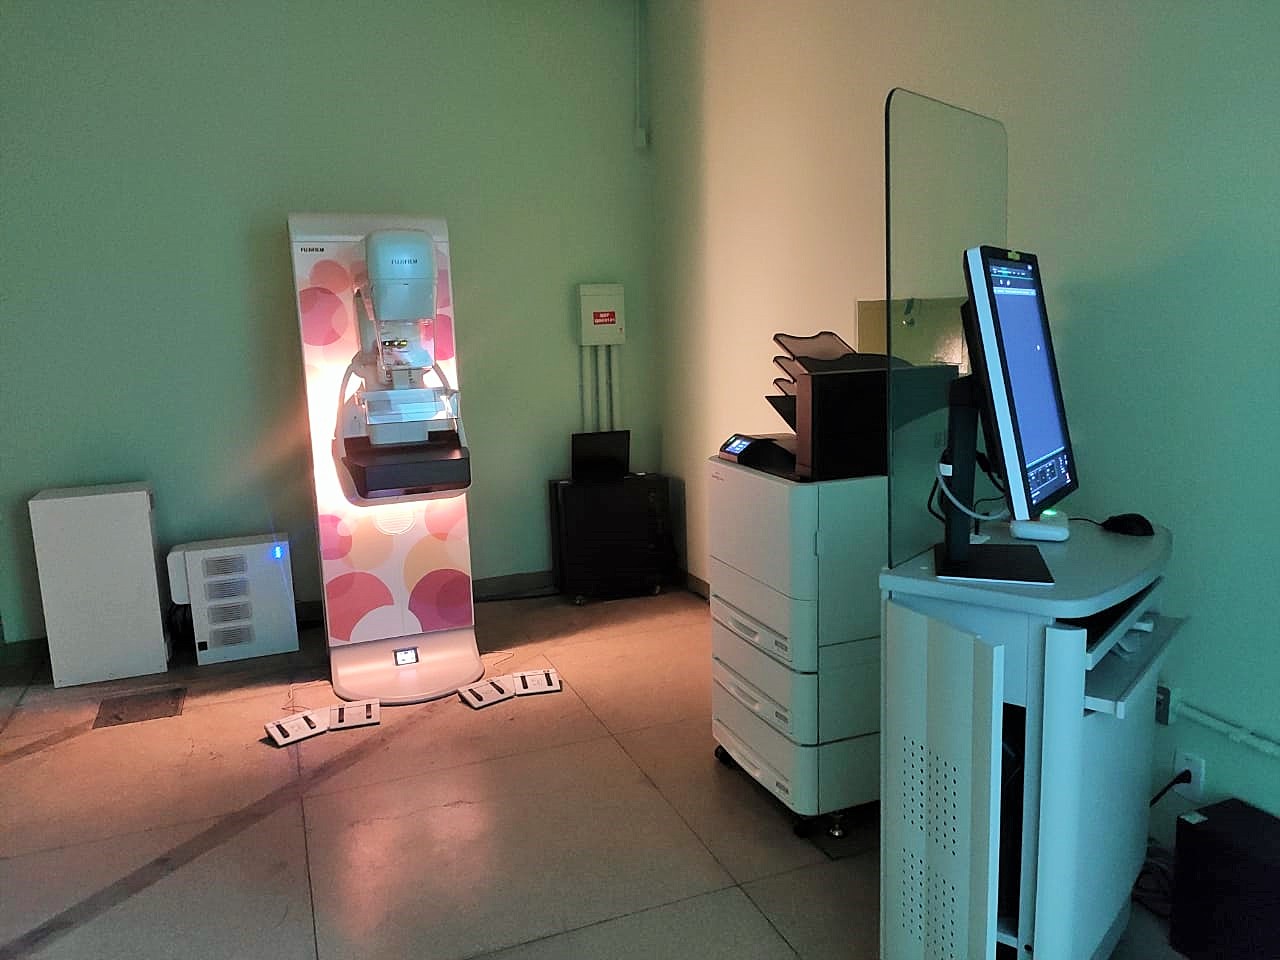 Mamografia: exames em Itaúna retomados no dia 12